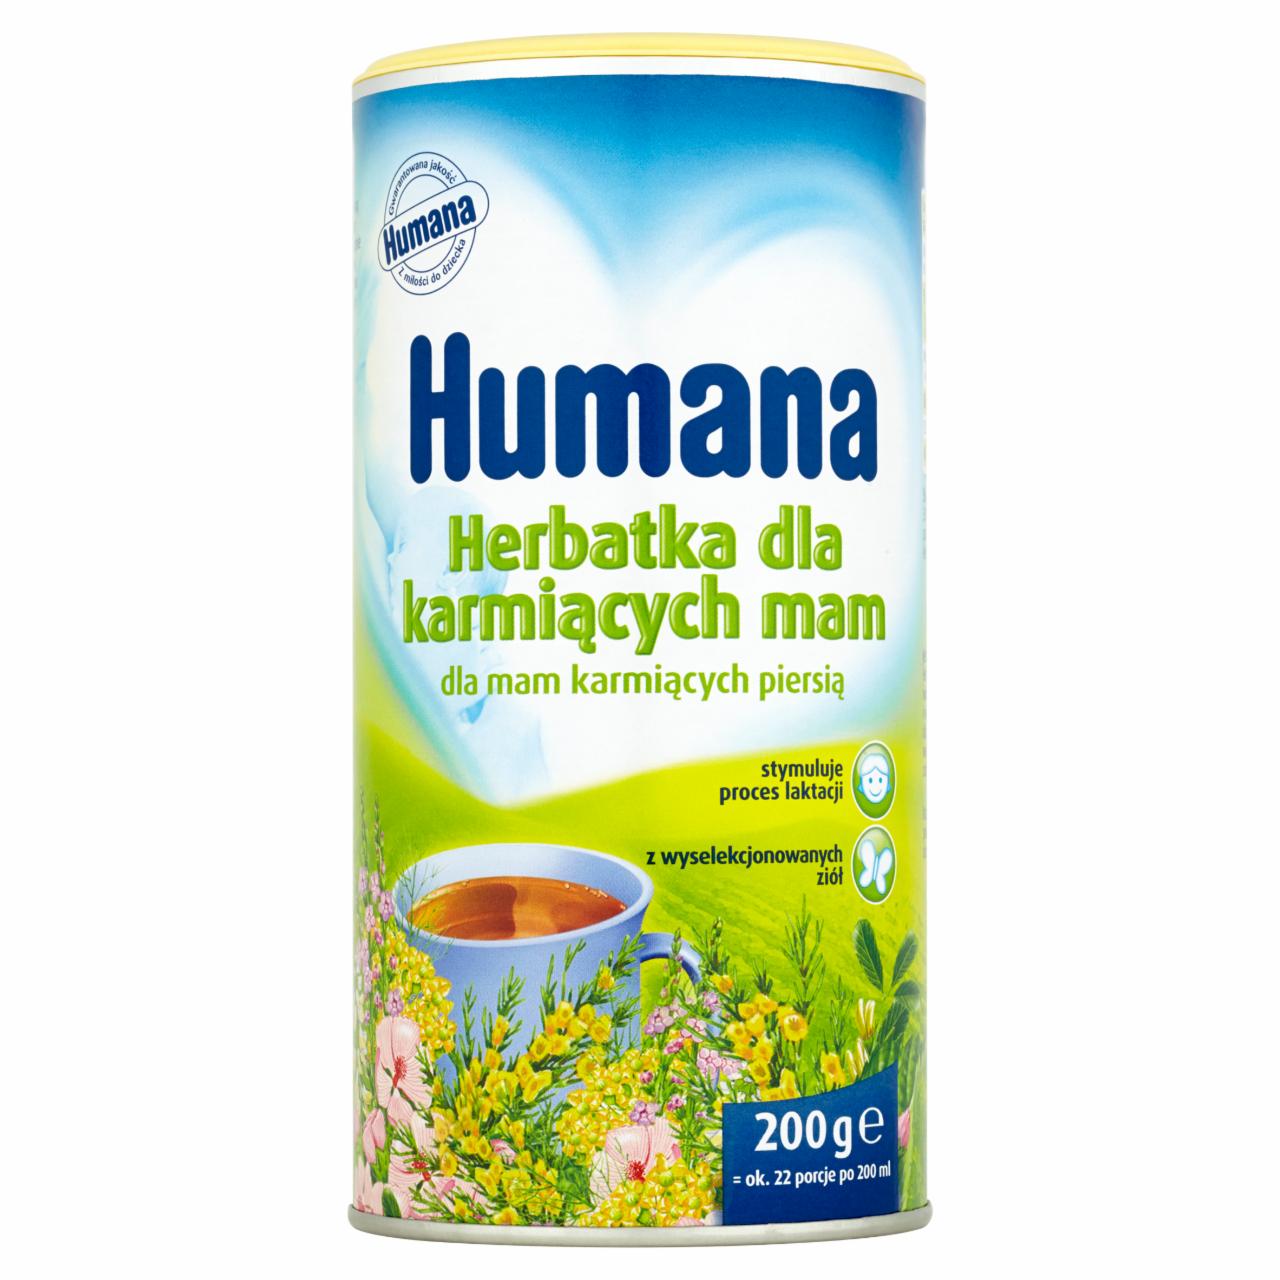 Zdjęcia - Humana Herbatka dla mam karmiących piersią 200 g